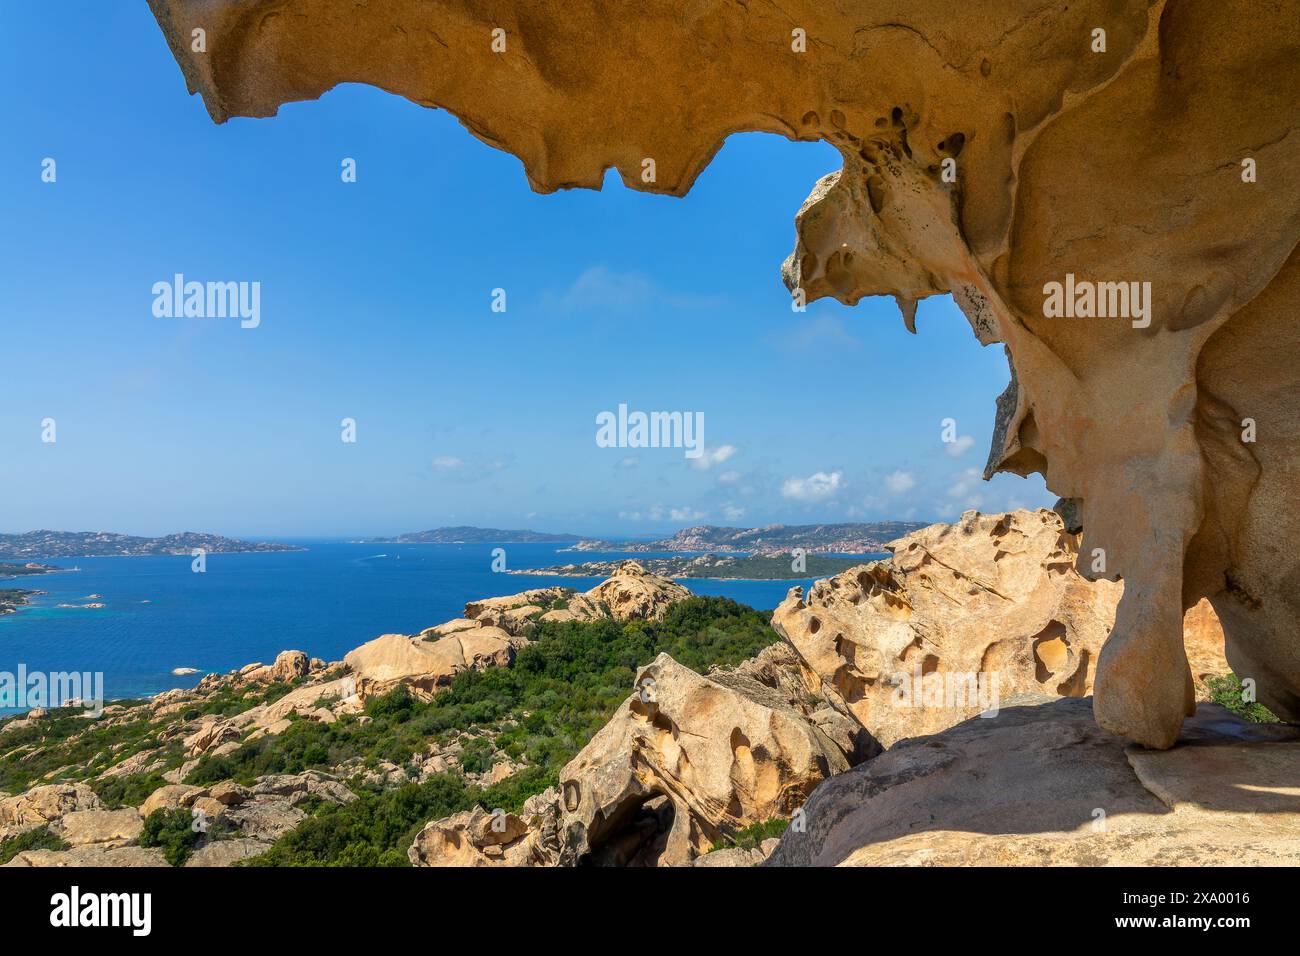 Vue sur la mer Méditerranée et la côte depuis le Rocher de l'Ours, Capo d'Orso, Sardaigne, Italie Banque D'Images